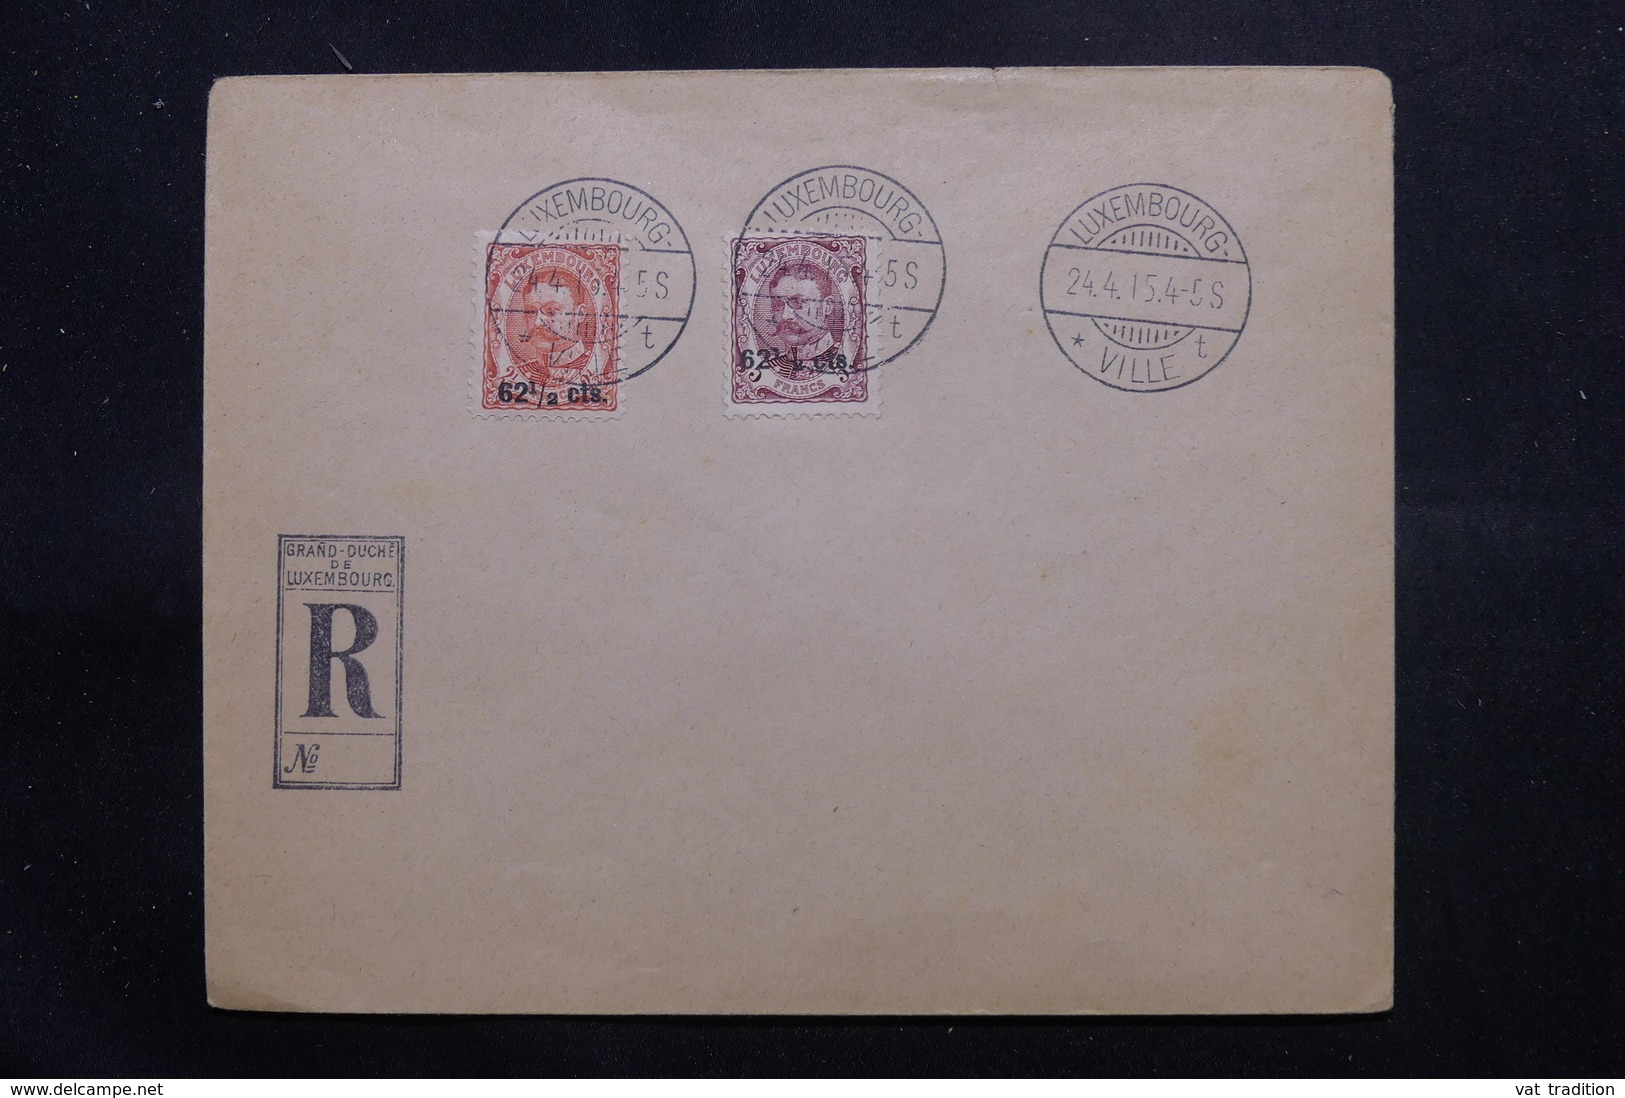 LUXEMBOURG - Affranchissement Plaisant Sur Enveloppe En Recommandé De Luxembourg En 1915, Non Circulé - L 54645 - 1906 Guillaume IV